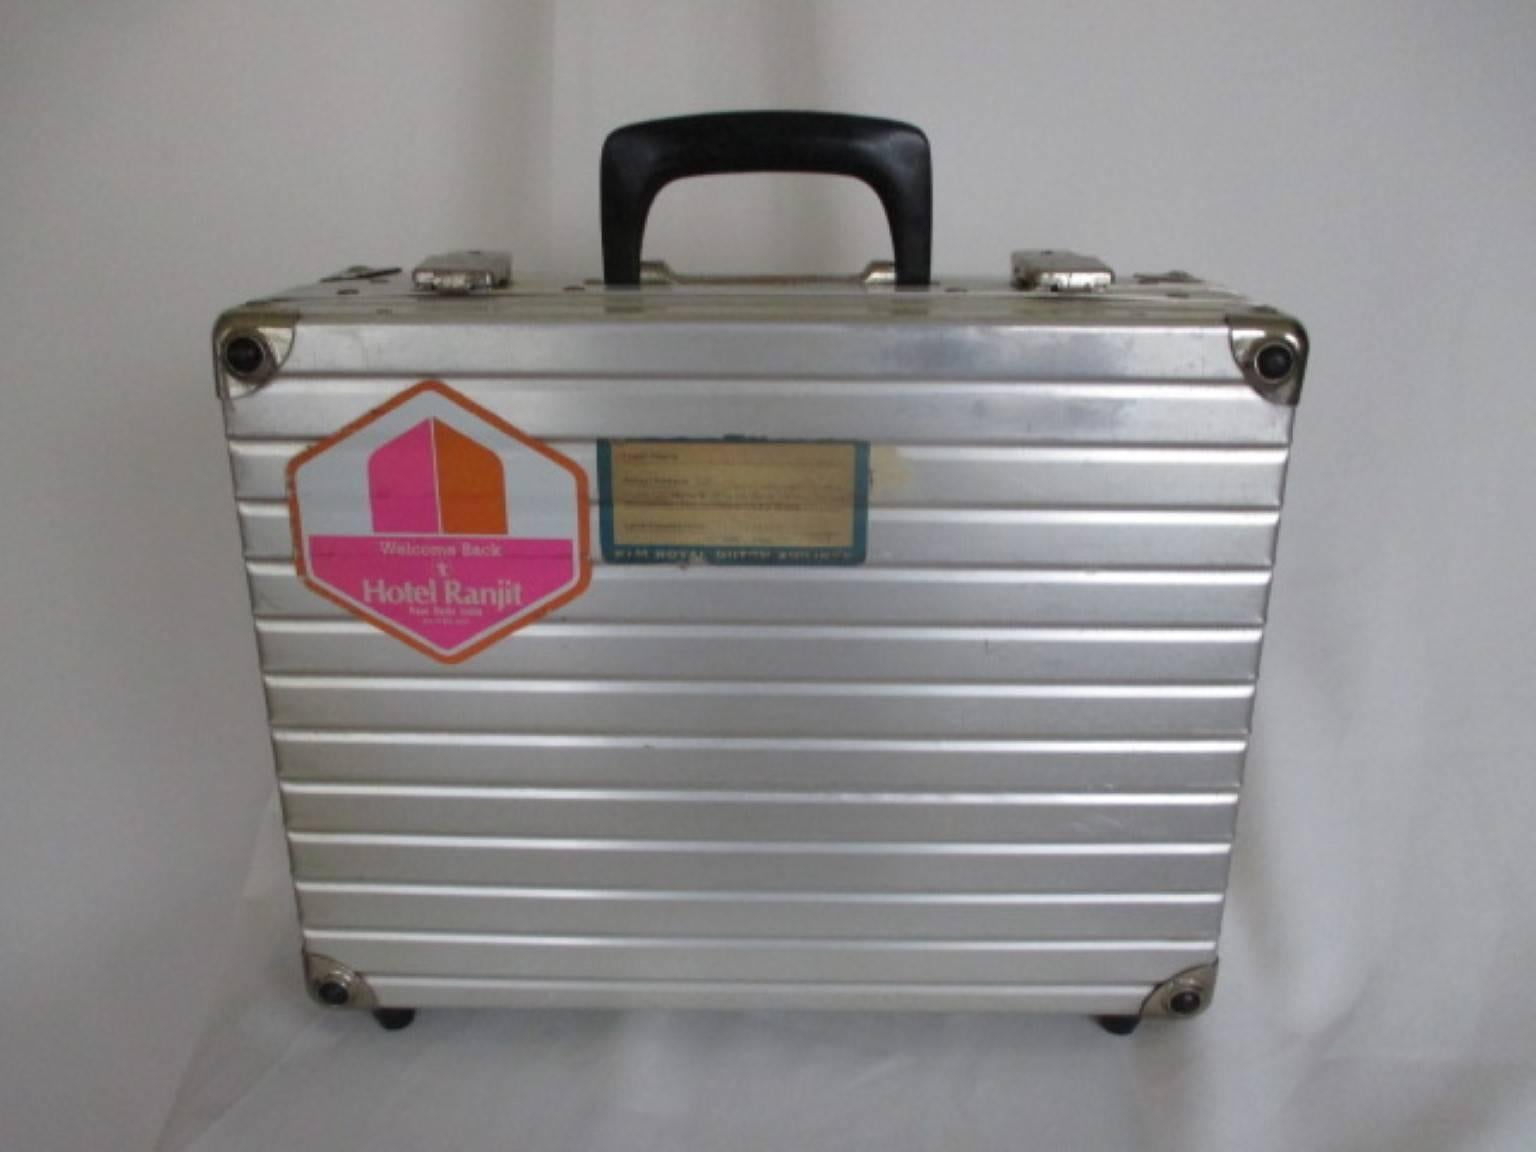 Gebrauchte Vintage Luggage Aluminium-Koffer, berühmt für dj Reisen in die Welt.
Größe: 28 cm x 37cm x 13 cm
Bitte beachten Sie, dass Vintage-Artikel nicht neu sind und daher kleine Mängel aufweisen können.